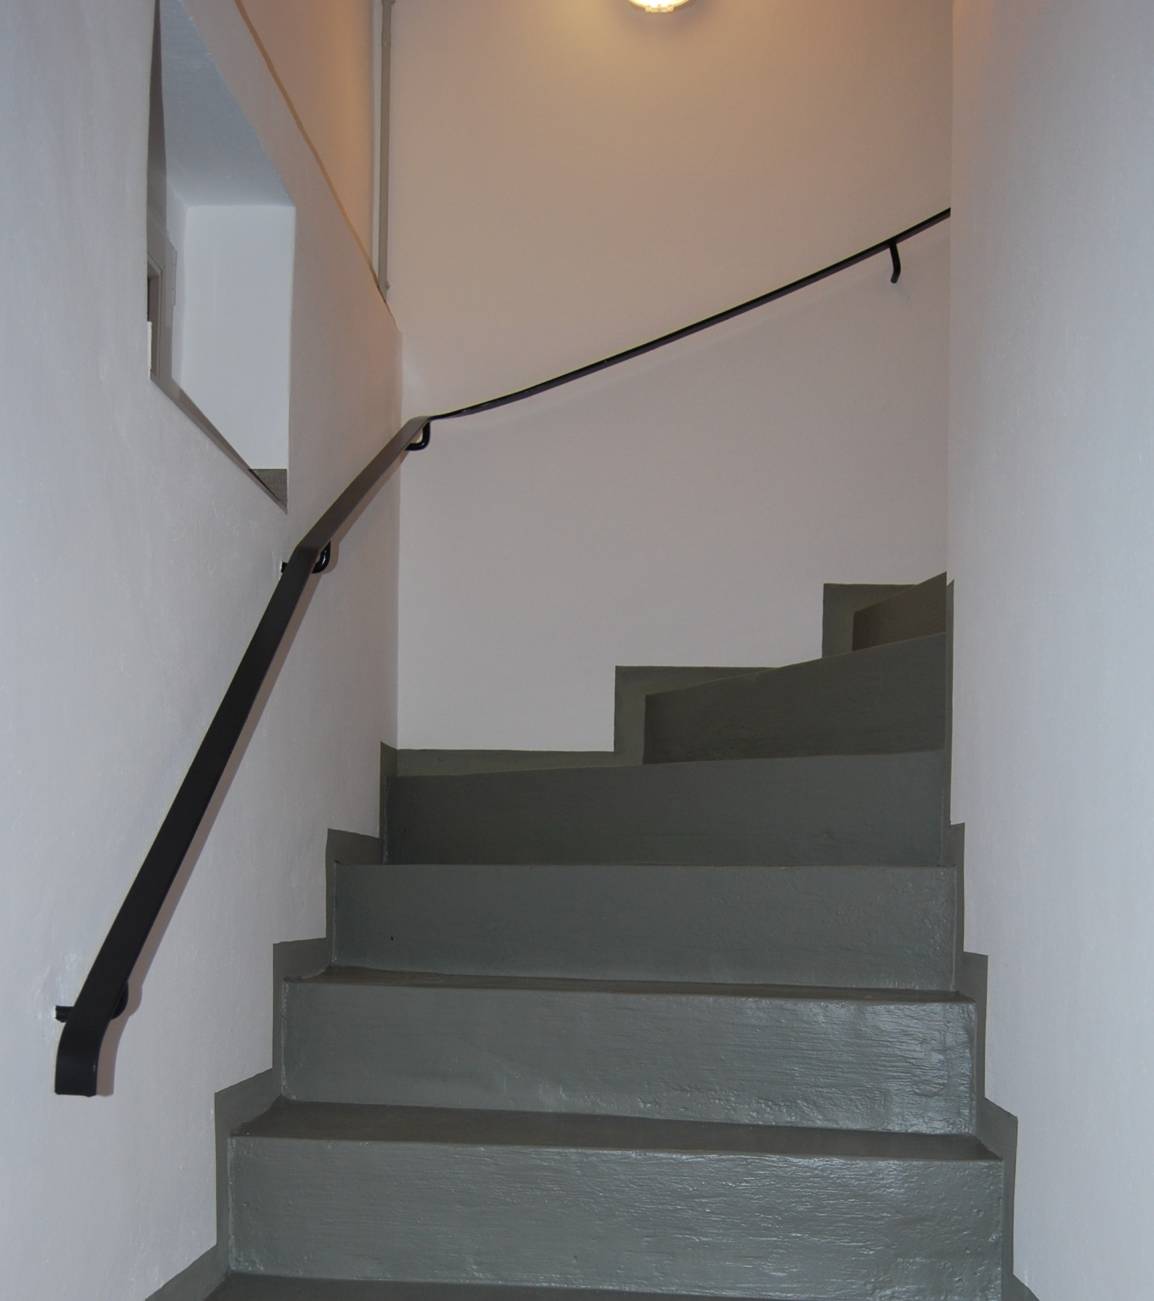 Kellertreppenabgang - durch Lackauftrag erfolgt das Verschließen der Betonporen. Im Fußbereich sollte mit neutralen und rutschhemmenden Farben gearbeitet werden.